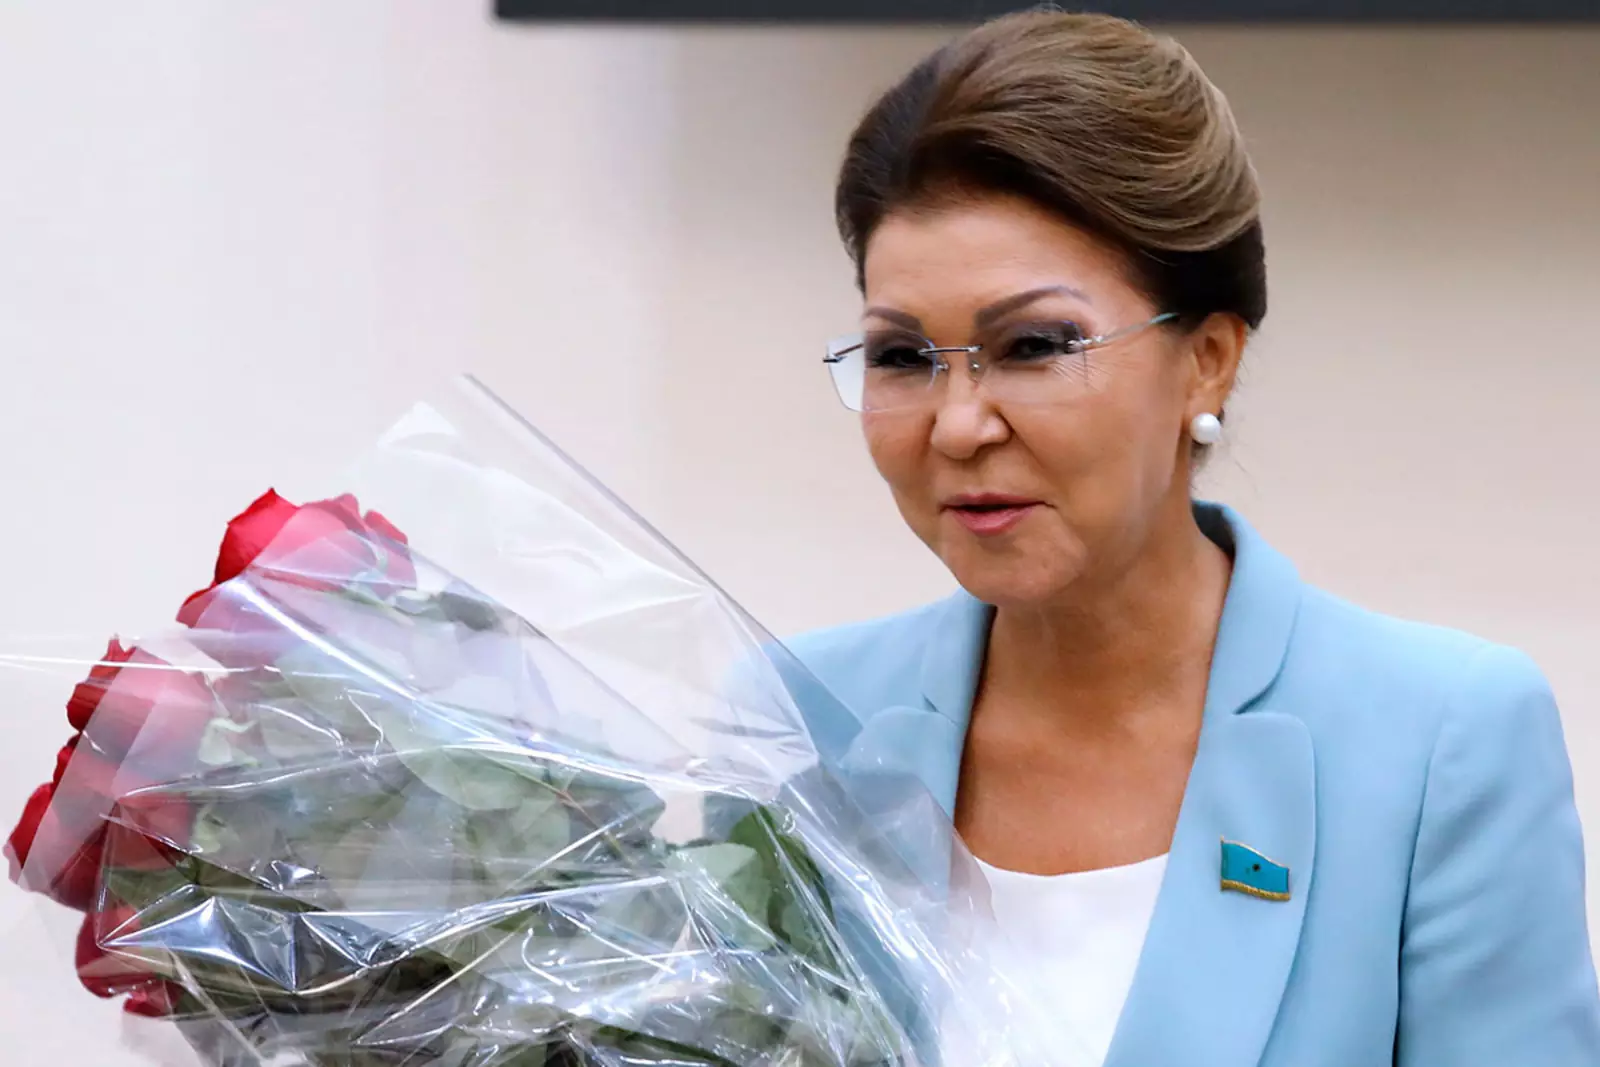 жена президента казахстана